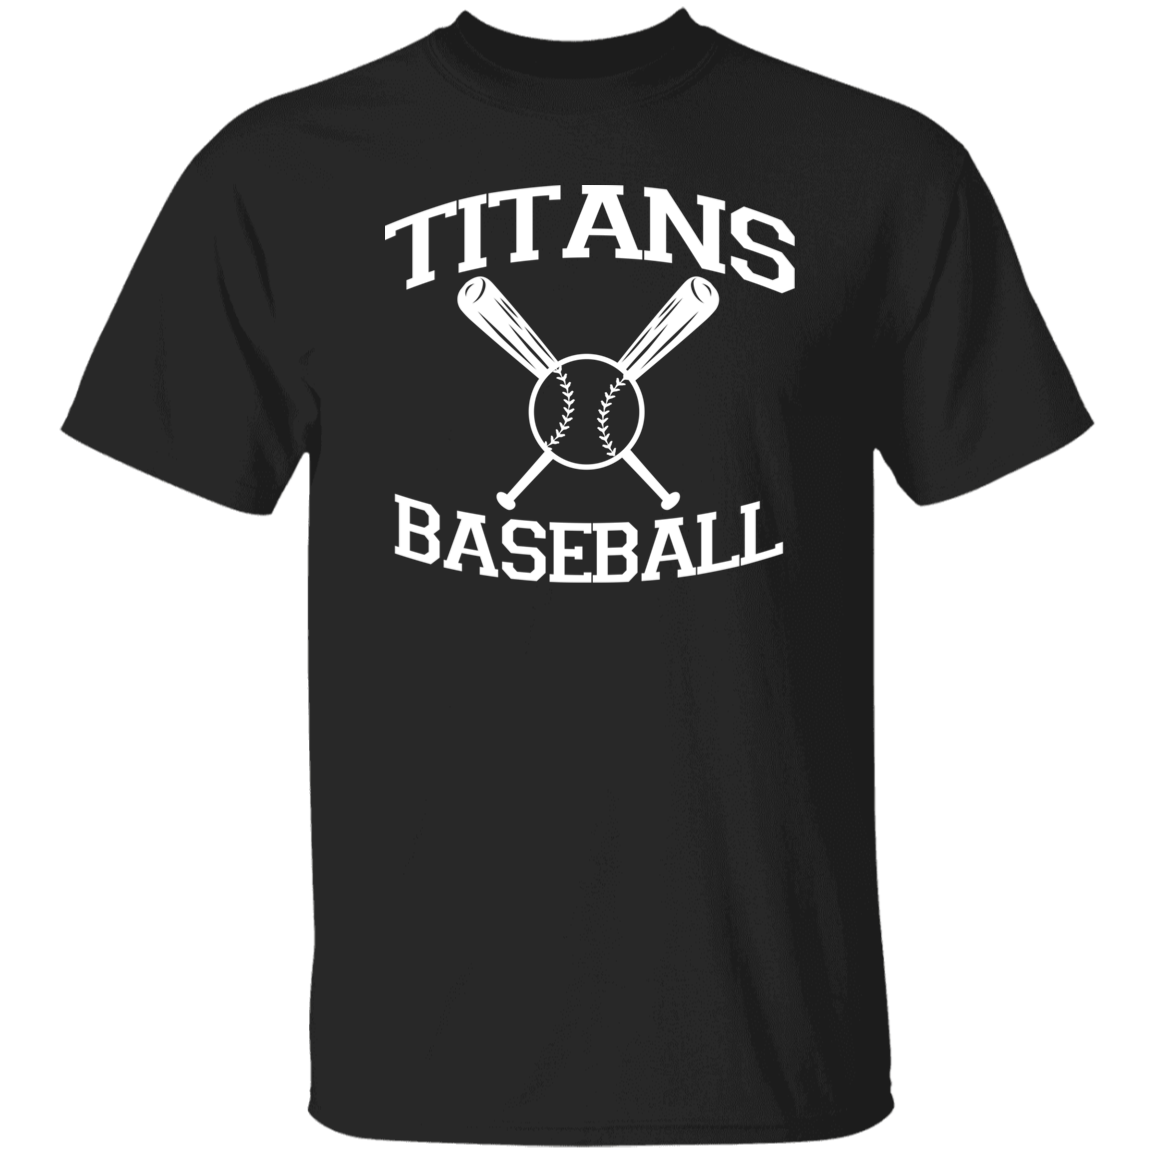 Titans Baseball White Print T-Shirt